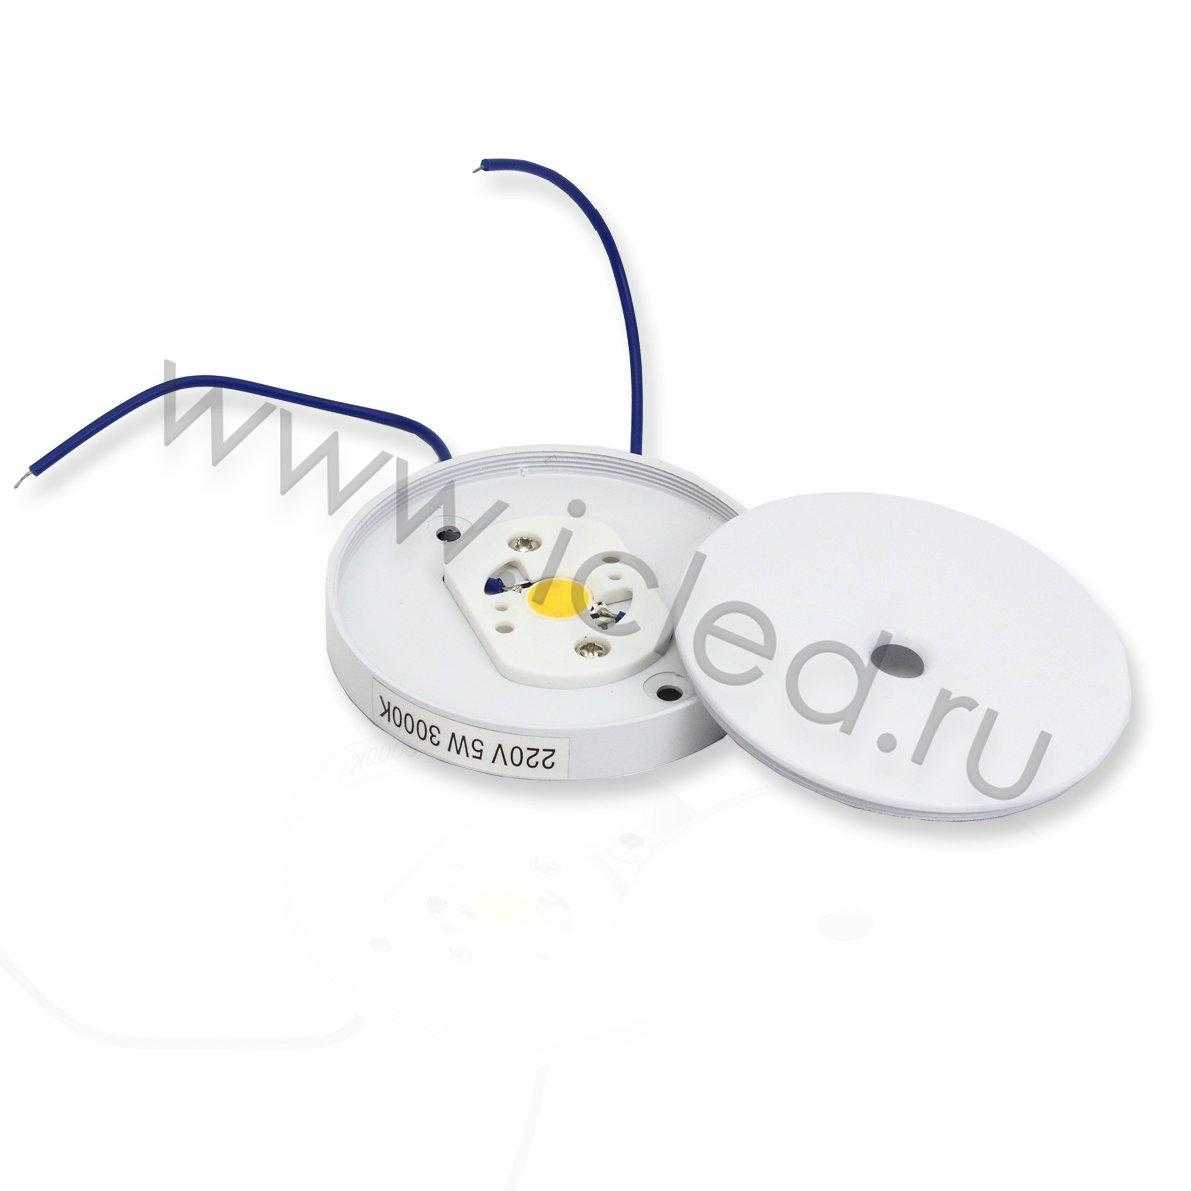 Светодиодные светильники Светильник мебельный JH-MZTD-107 B445 (220V, 5W, warm white)